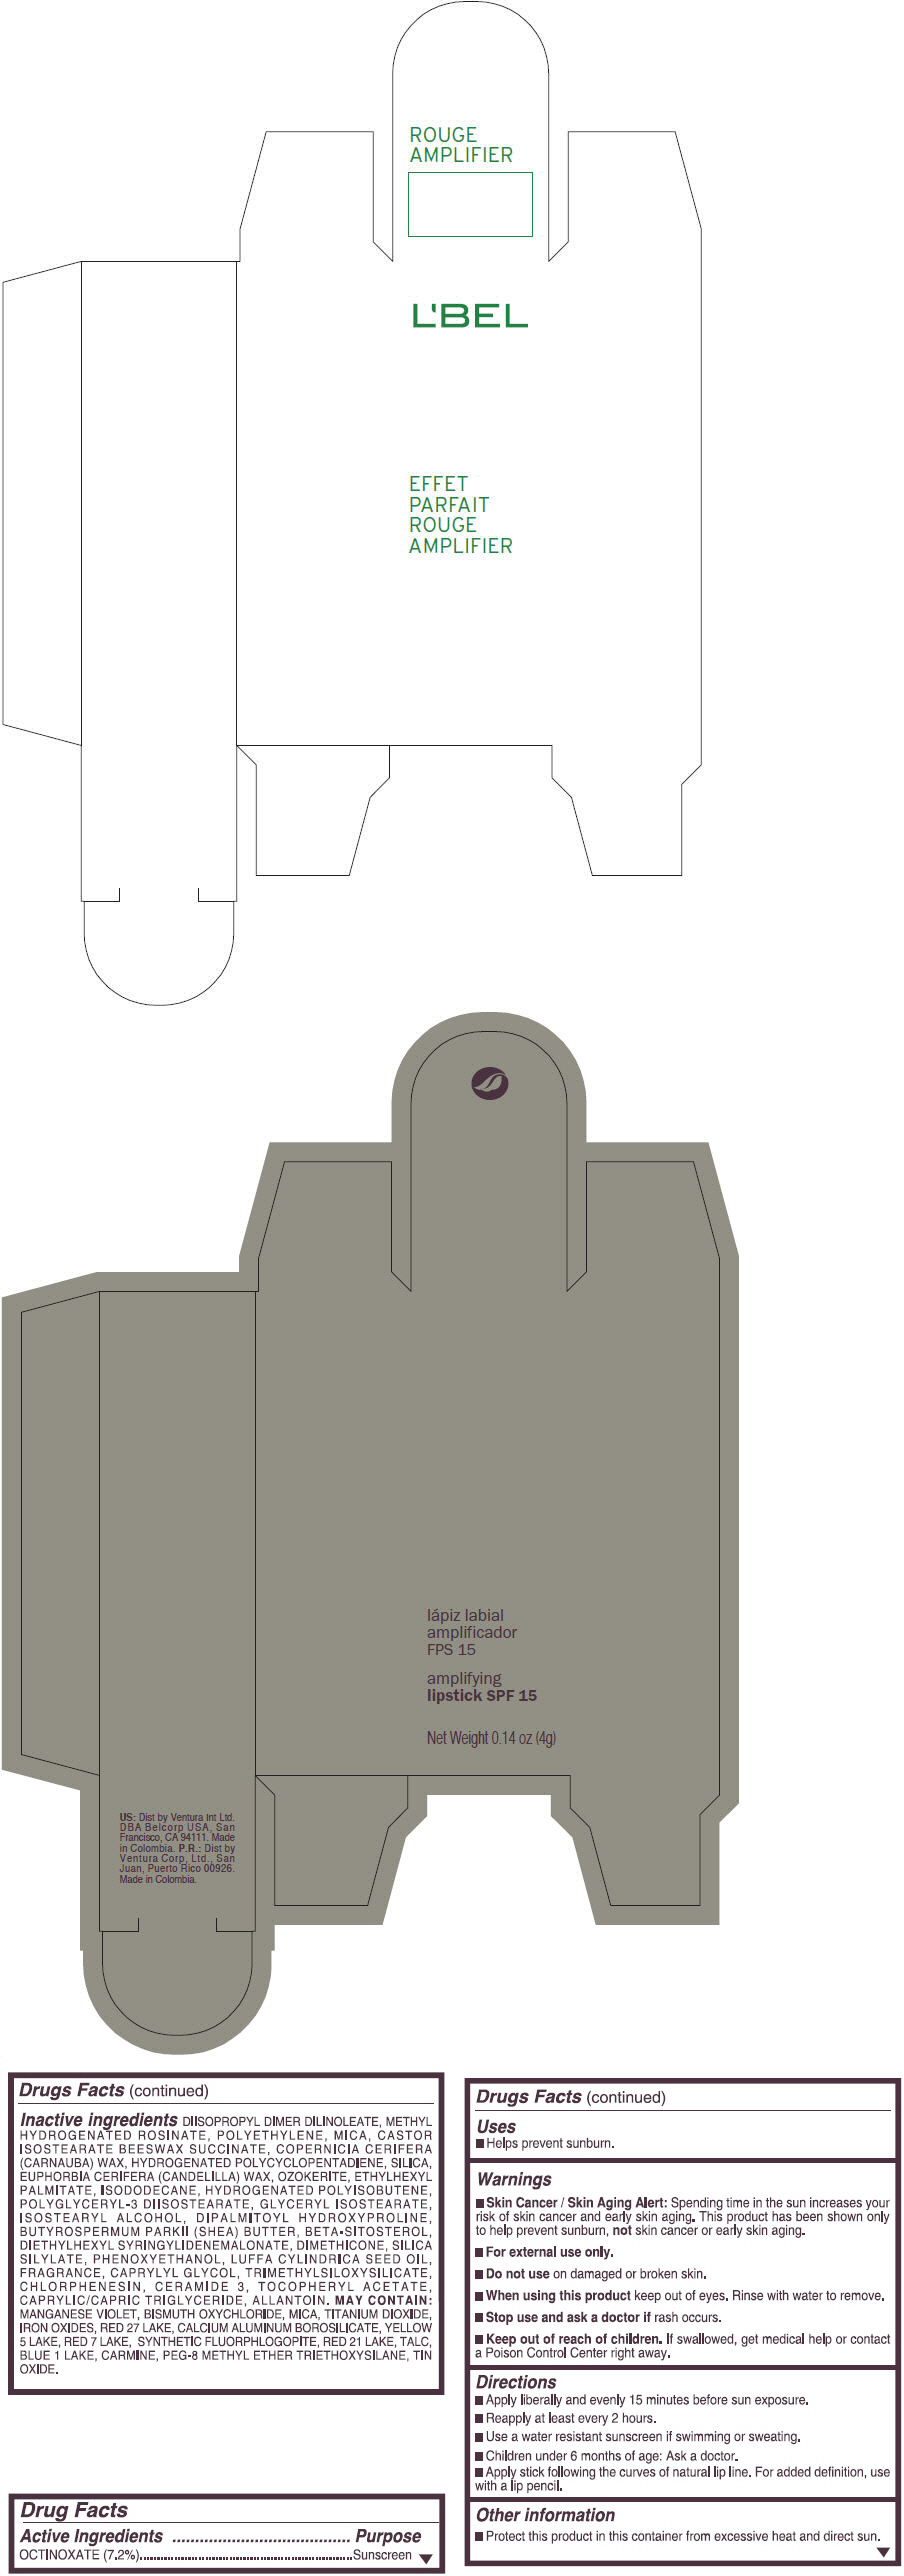 PRINCIPAL DISPLAY PANEL - 4 g Tube Box - (CORAL MAXIMUM) - ORANGE